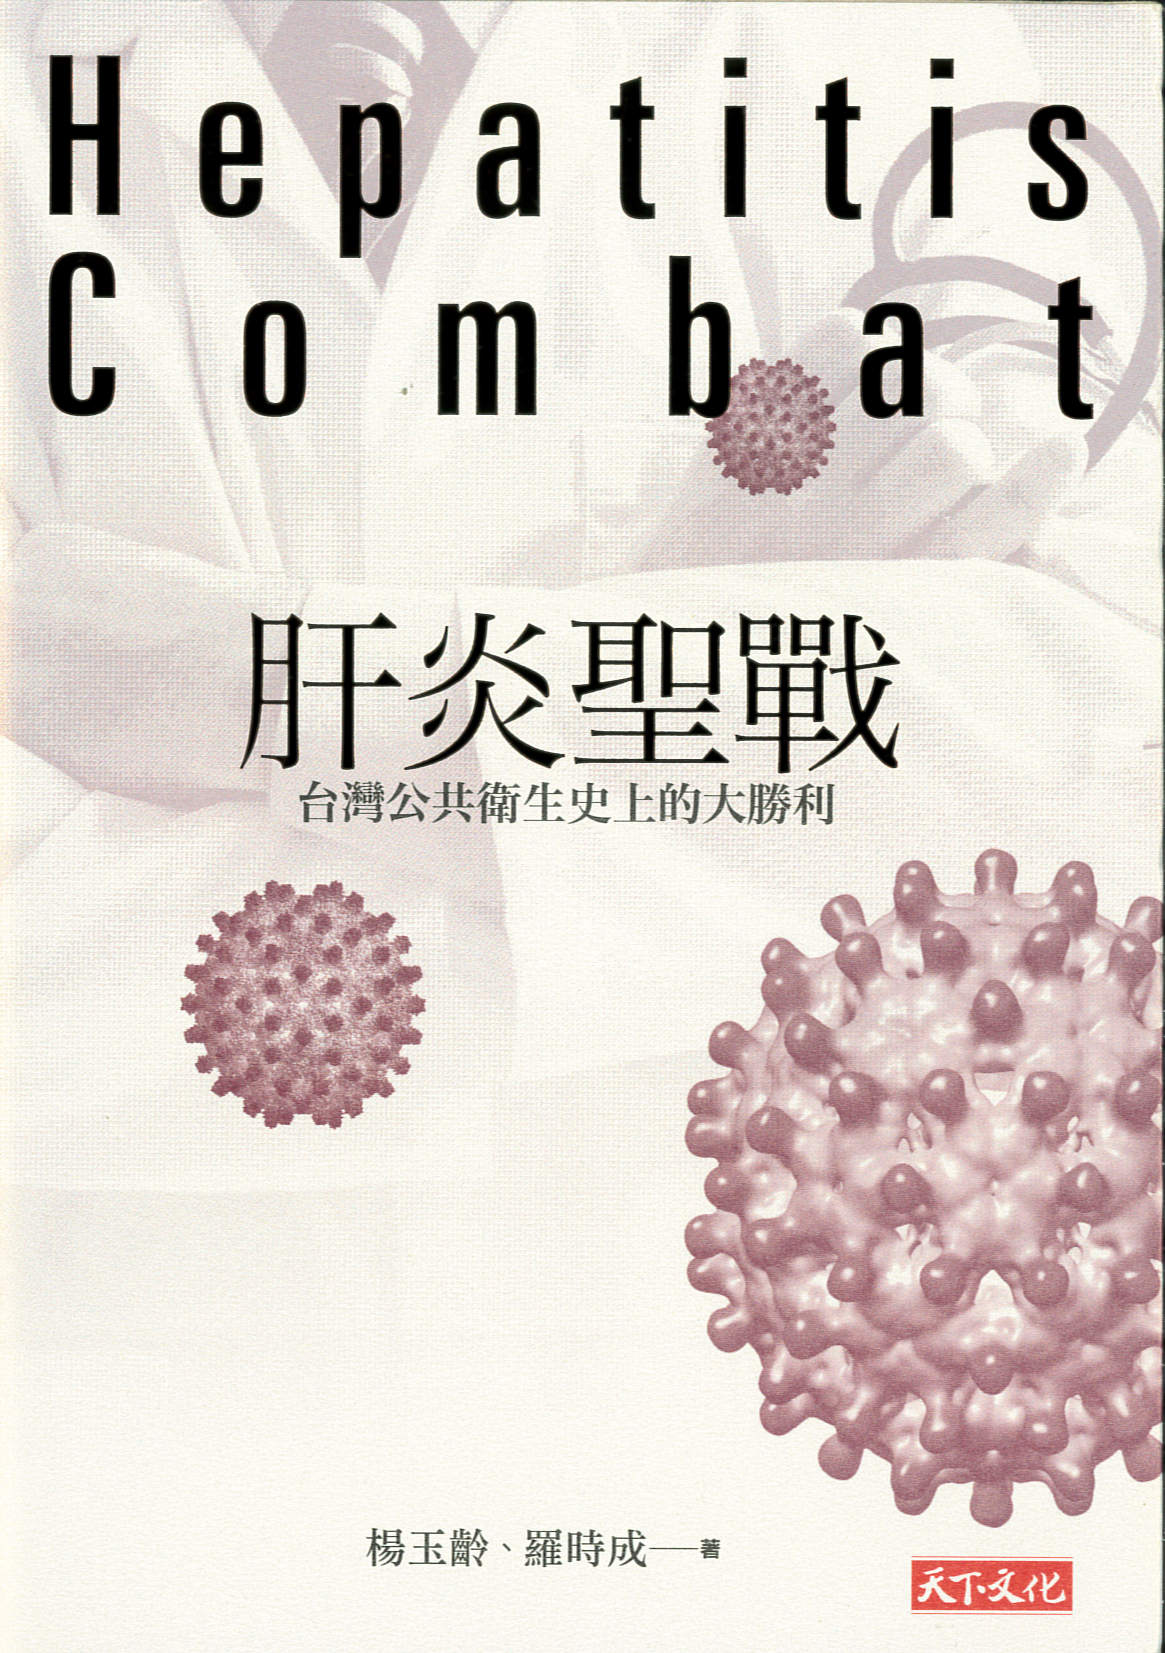 肝炎聖戰 : 臺灣公共衛生史上的大勝利 = Hepatitis B combat in Taiwan /